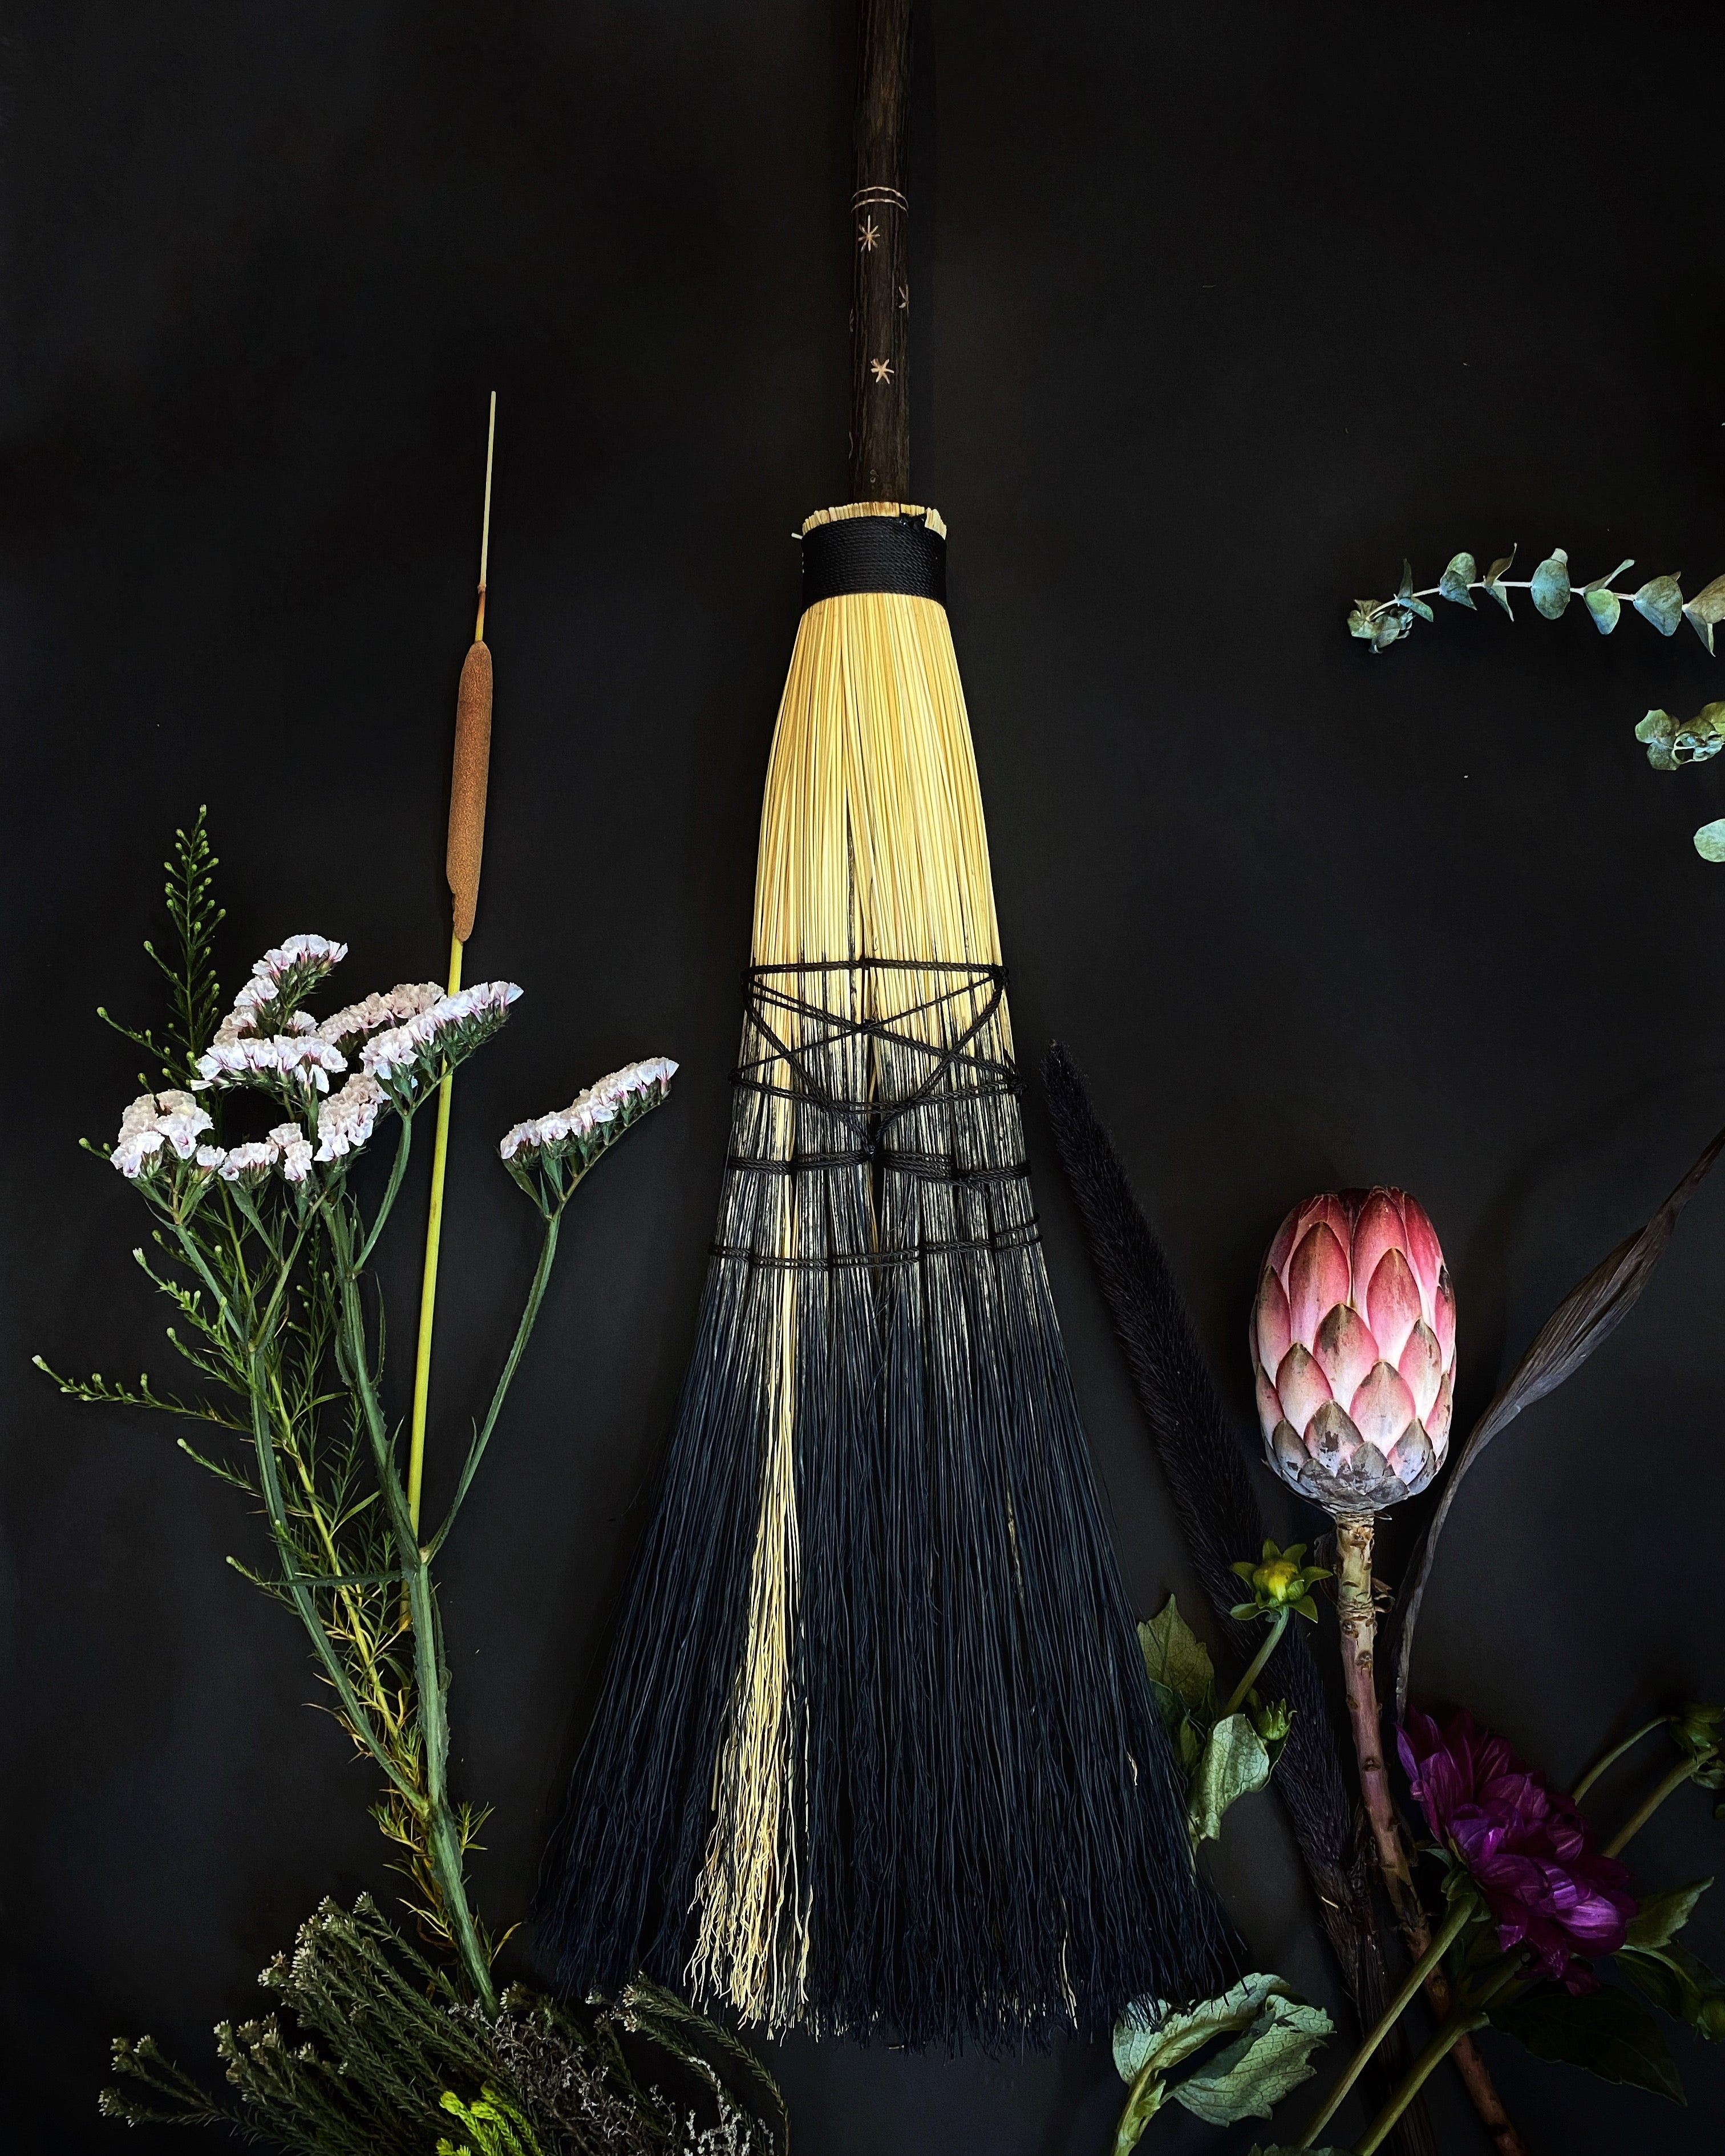 Brooms, Besoms, and Handbrooms